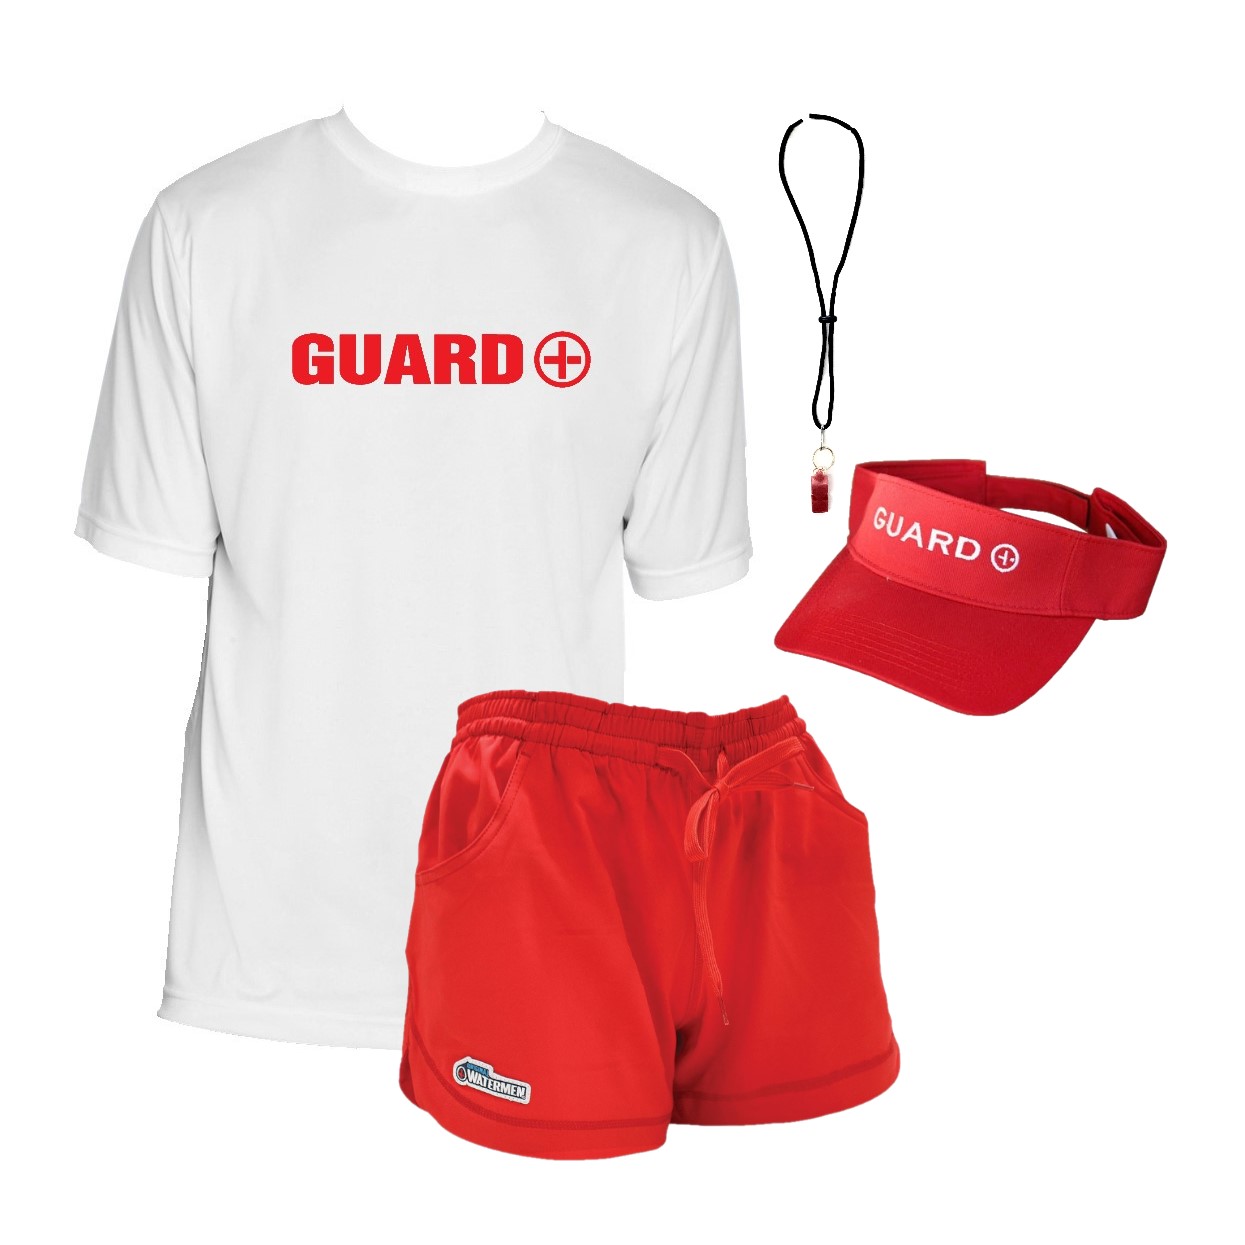 lifeguard clothing, lifeguard uniforms, lifeguard apparel